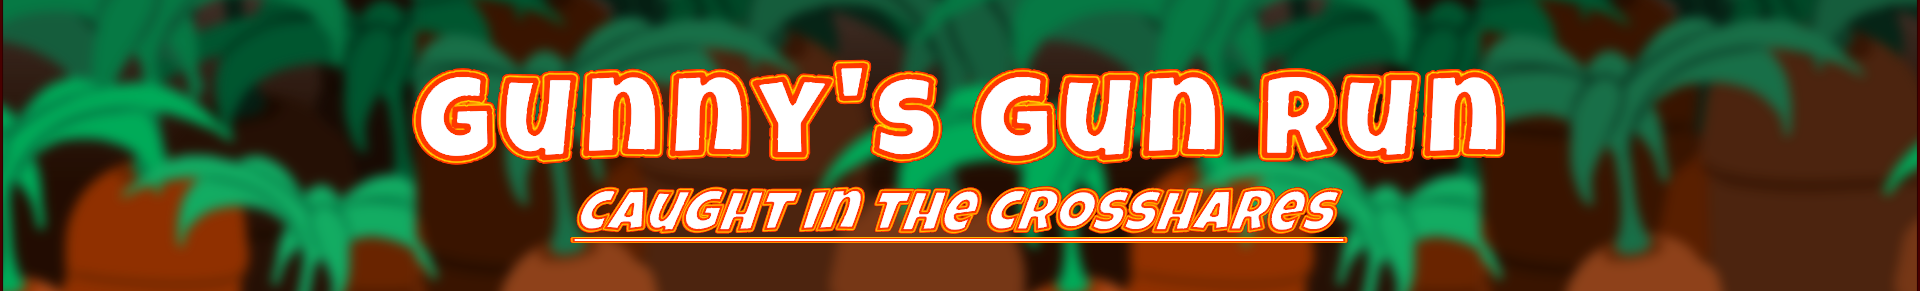 Gunny's Gun Run: Caught in the Crosshares